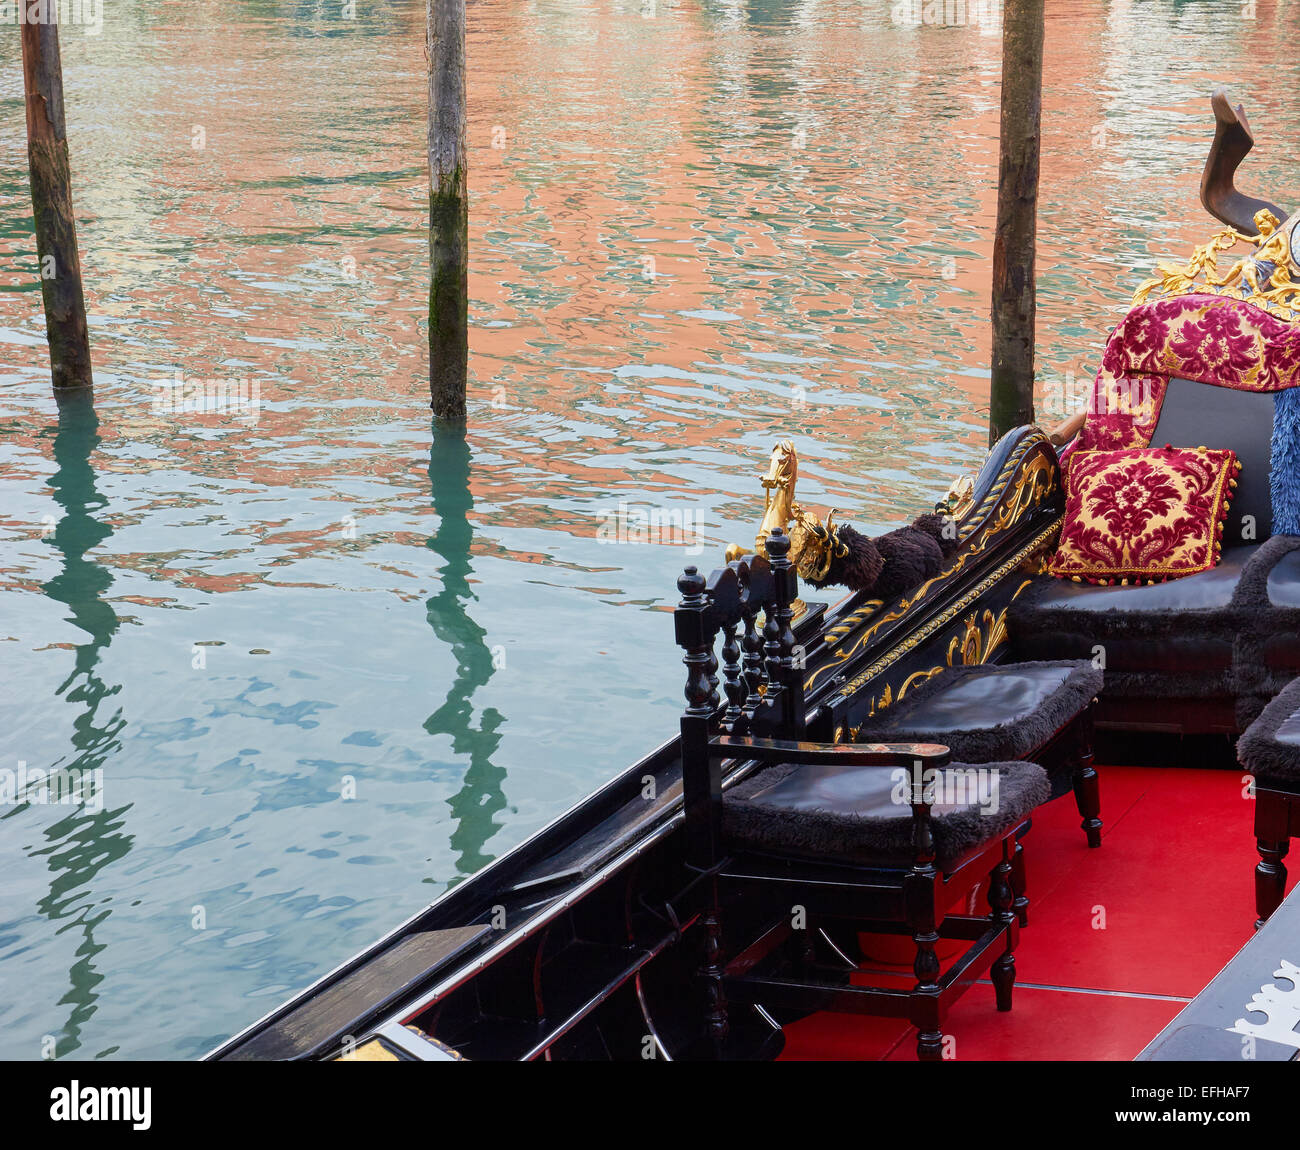 Dekorative rote innere der Gondel Venedig Veneto Italien Europa Stockfoto